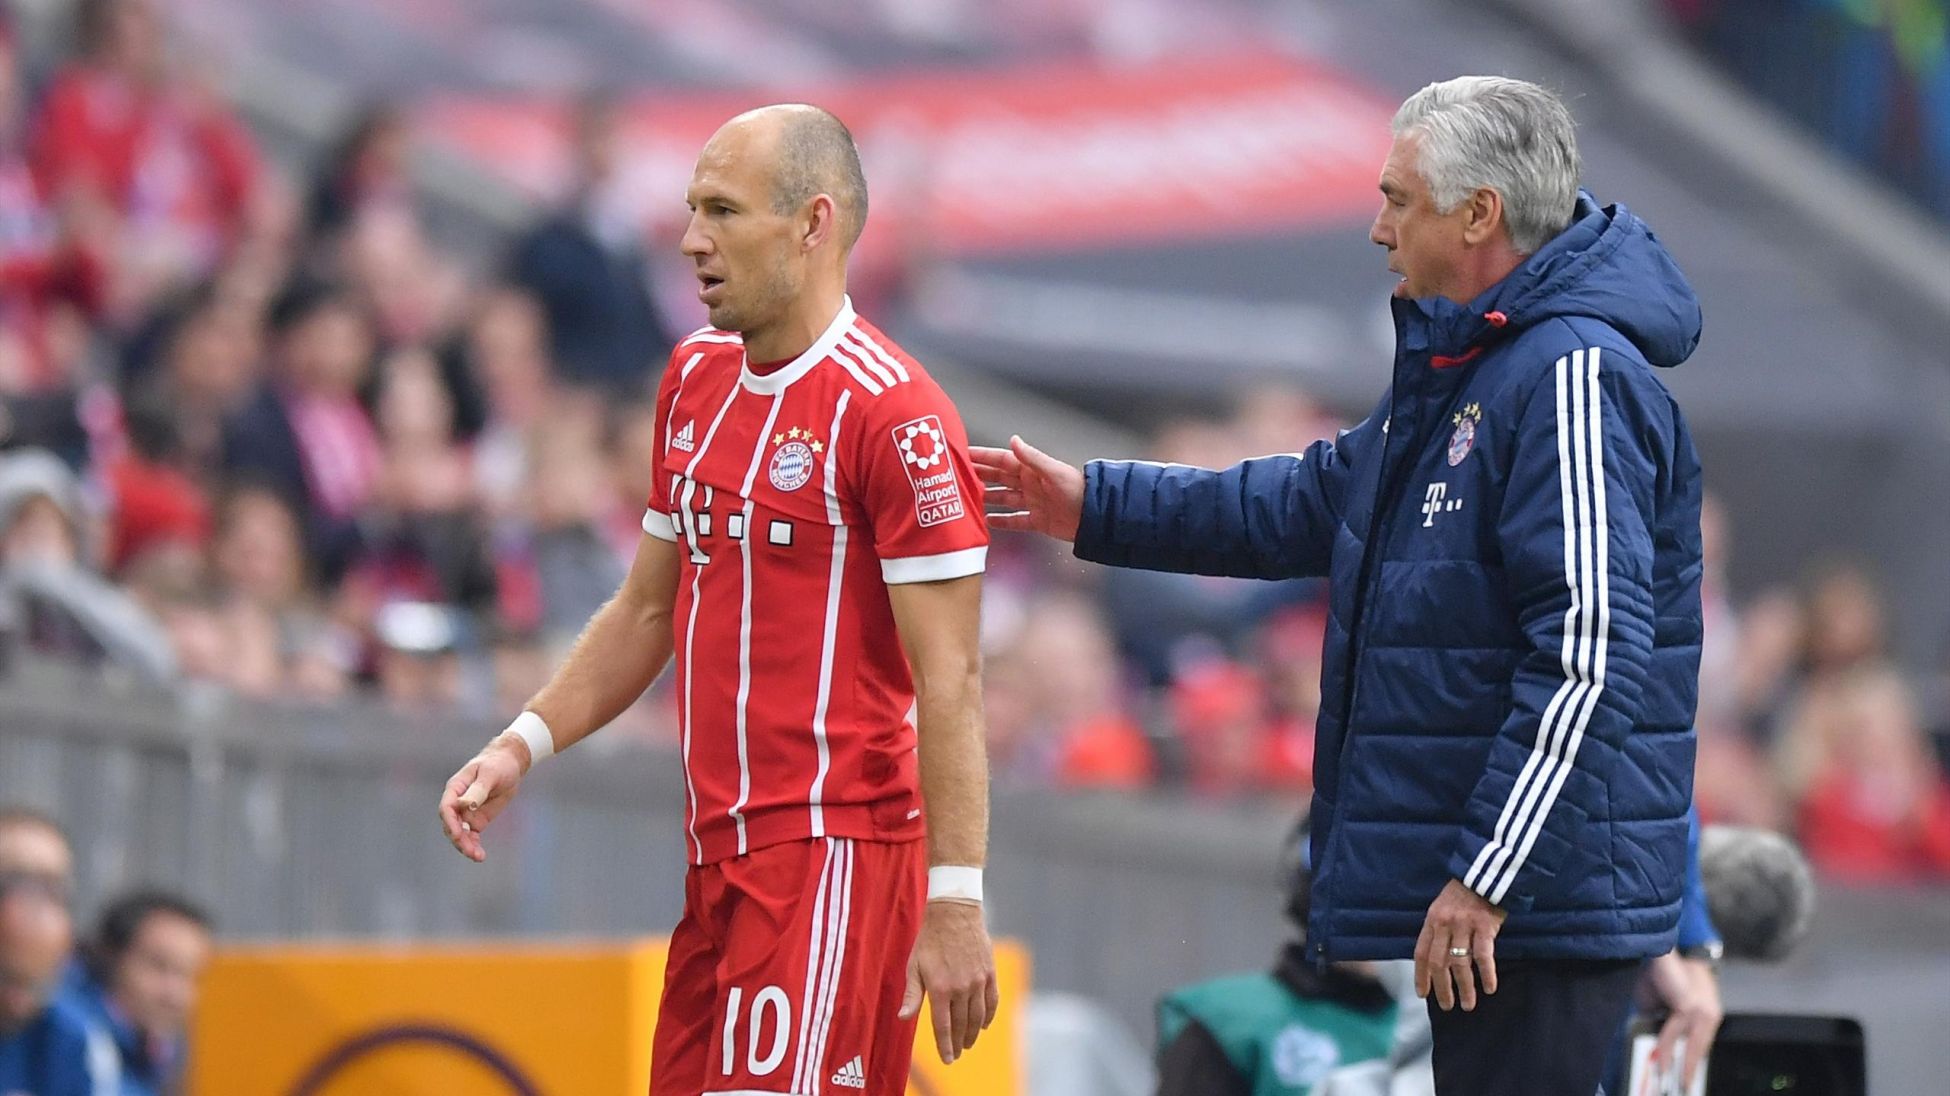 "L'argent marque trois buts" : la presse allemande répond à Robben et se paye Ancelotti - Eurosport.fr